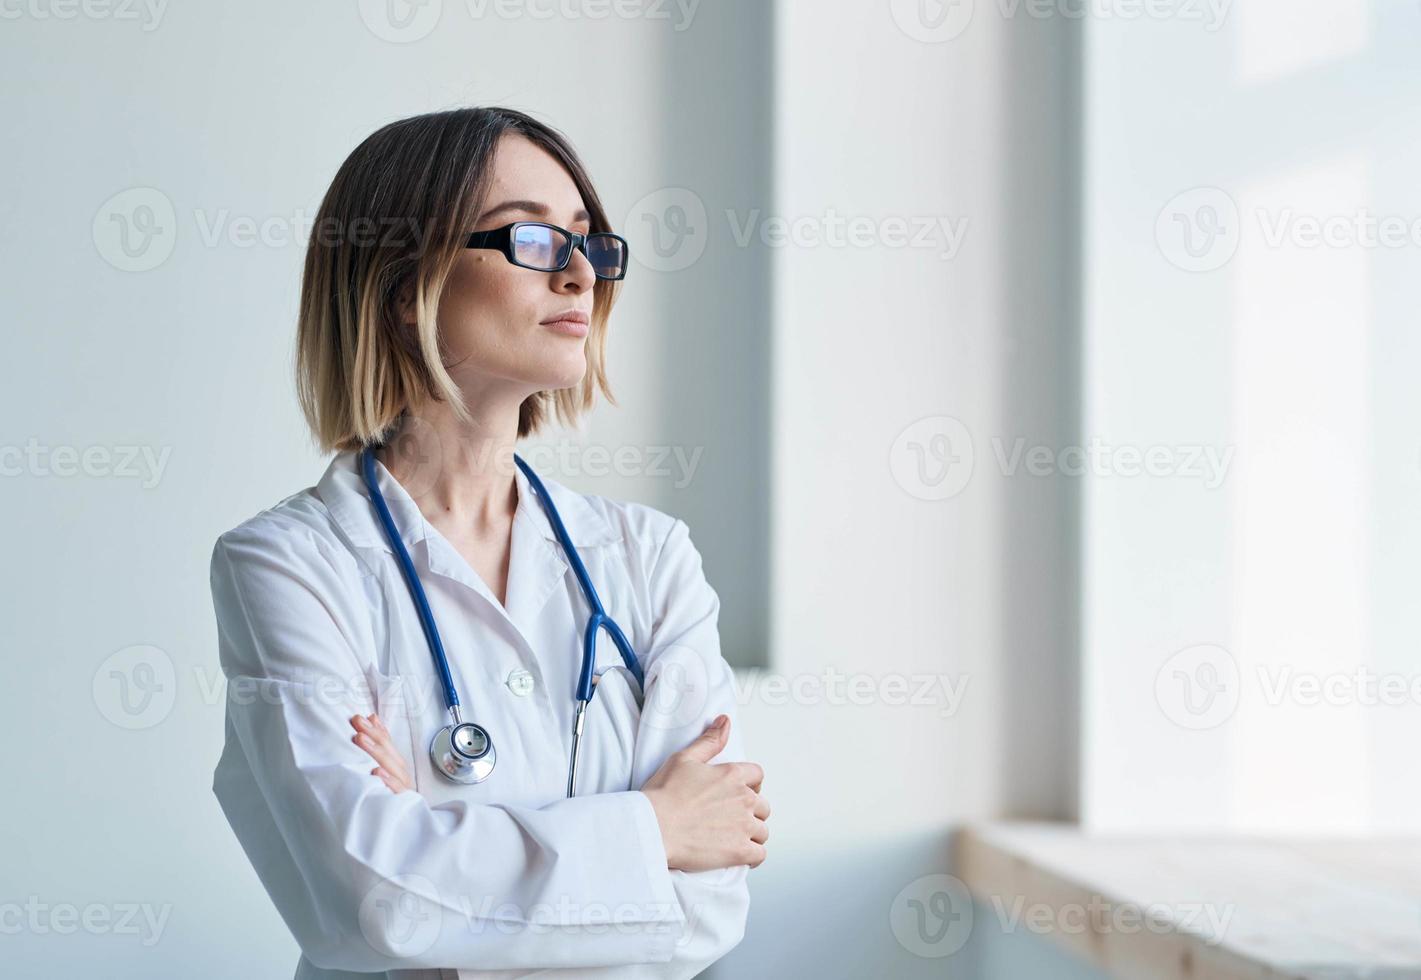 profesional médico mujer con lentes cerca ventana y estetoscopio foto